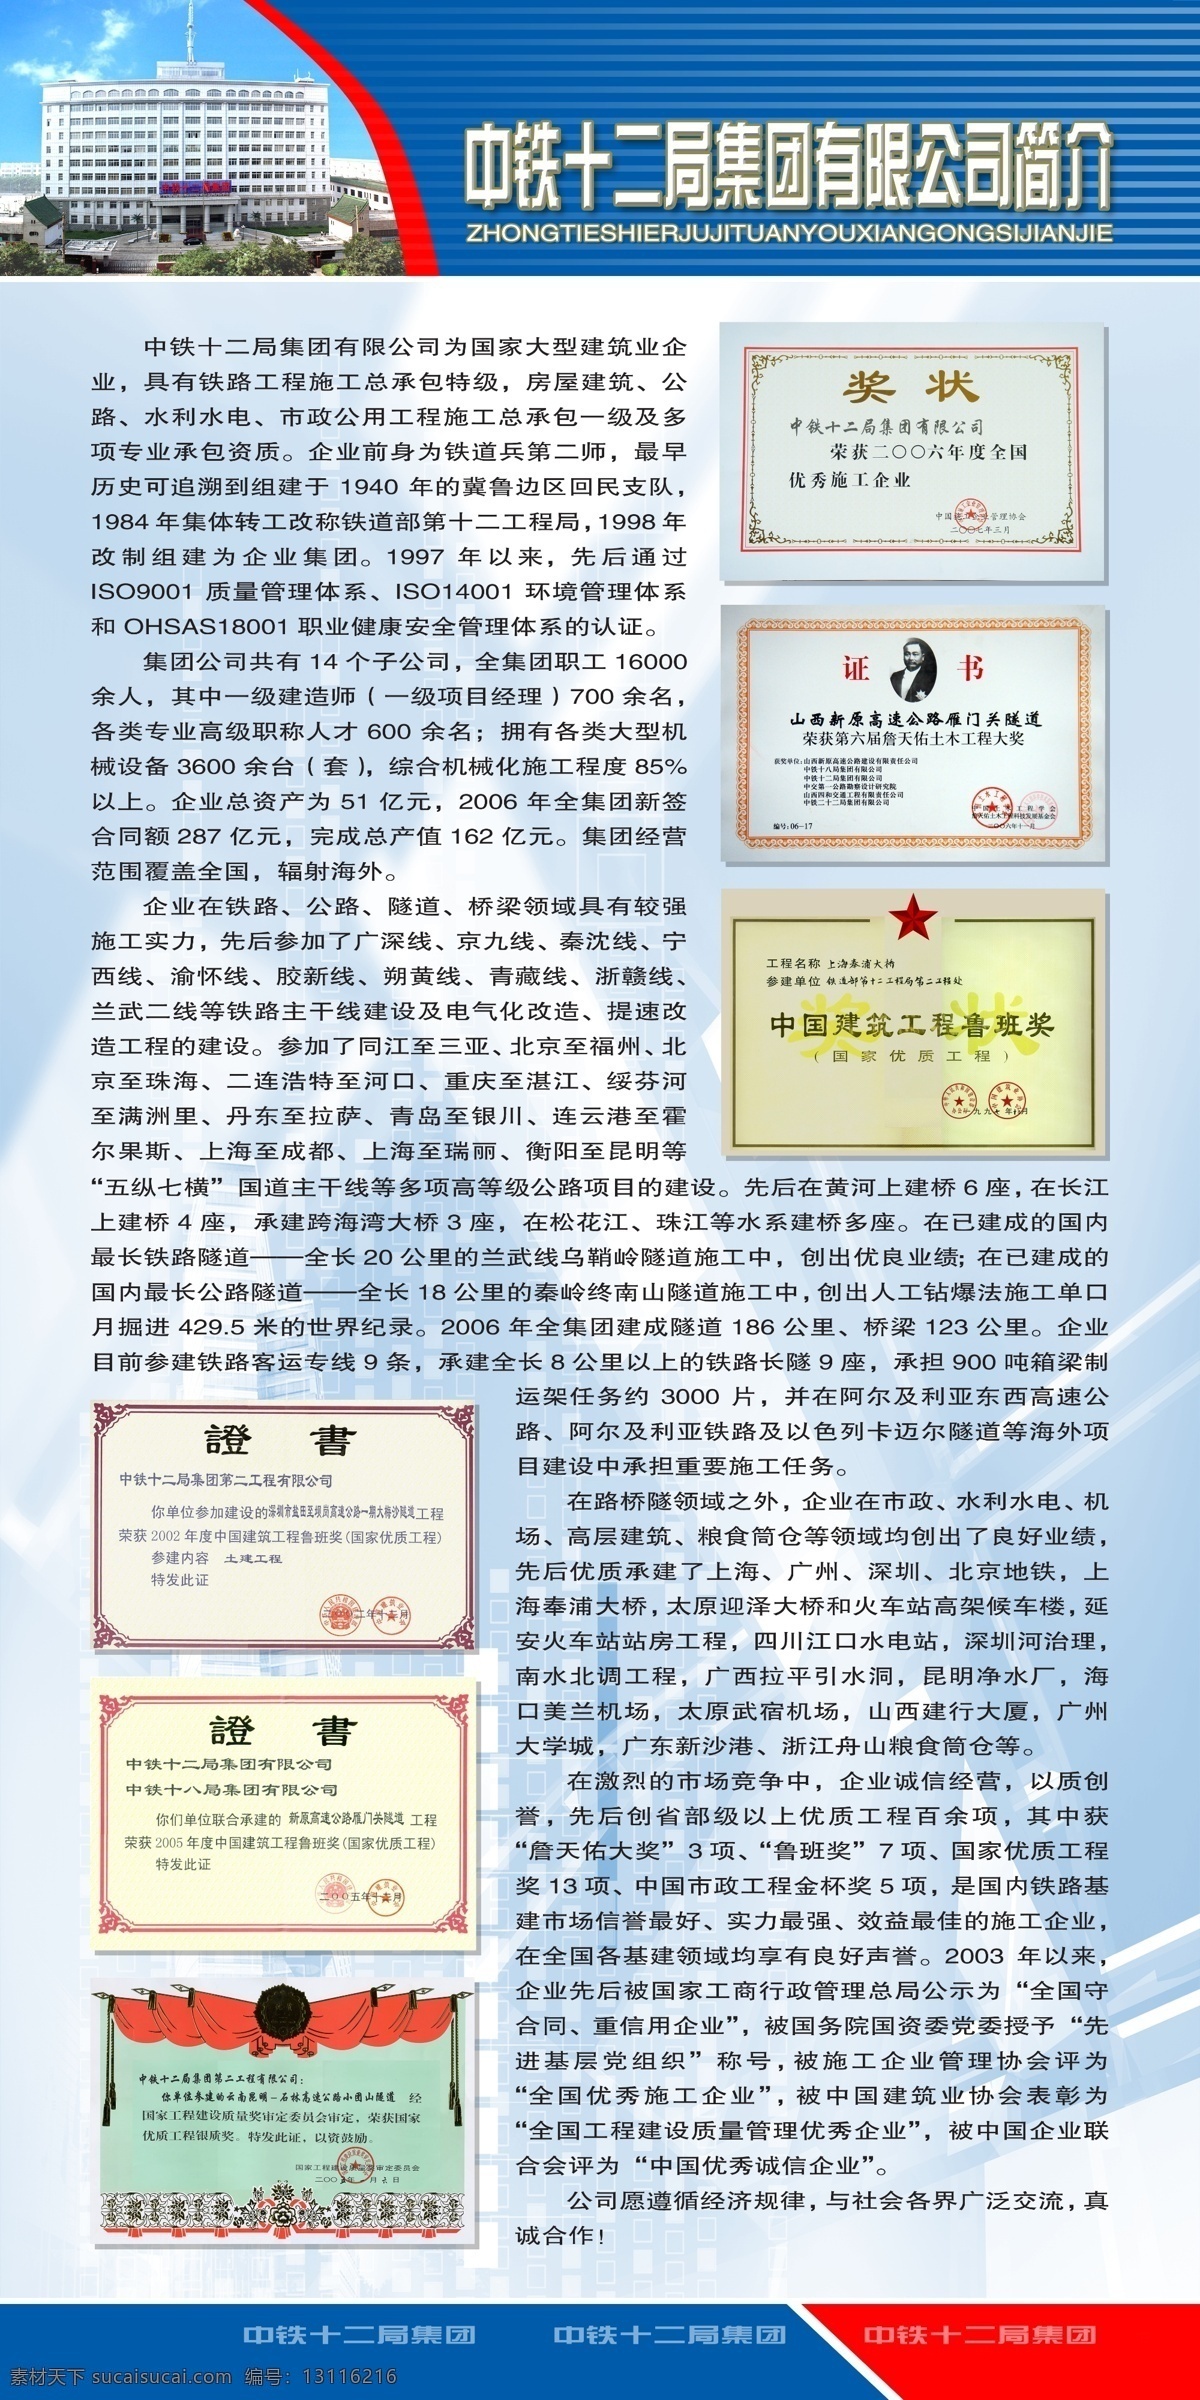 中铁 十 二 局 集团 公司简介 展板 有限公司 所获奖励 展板模板 广告设计模板 源文件